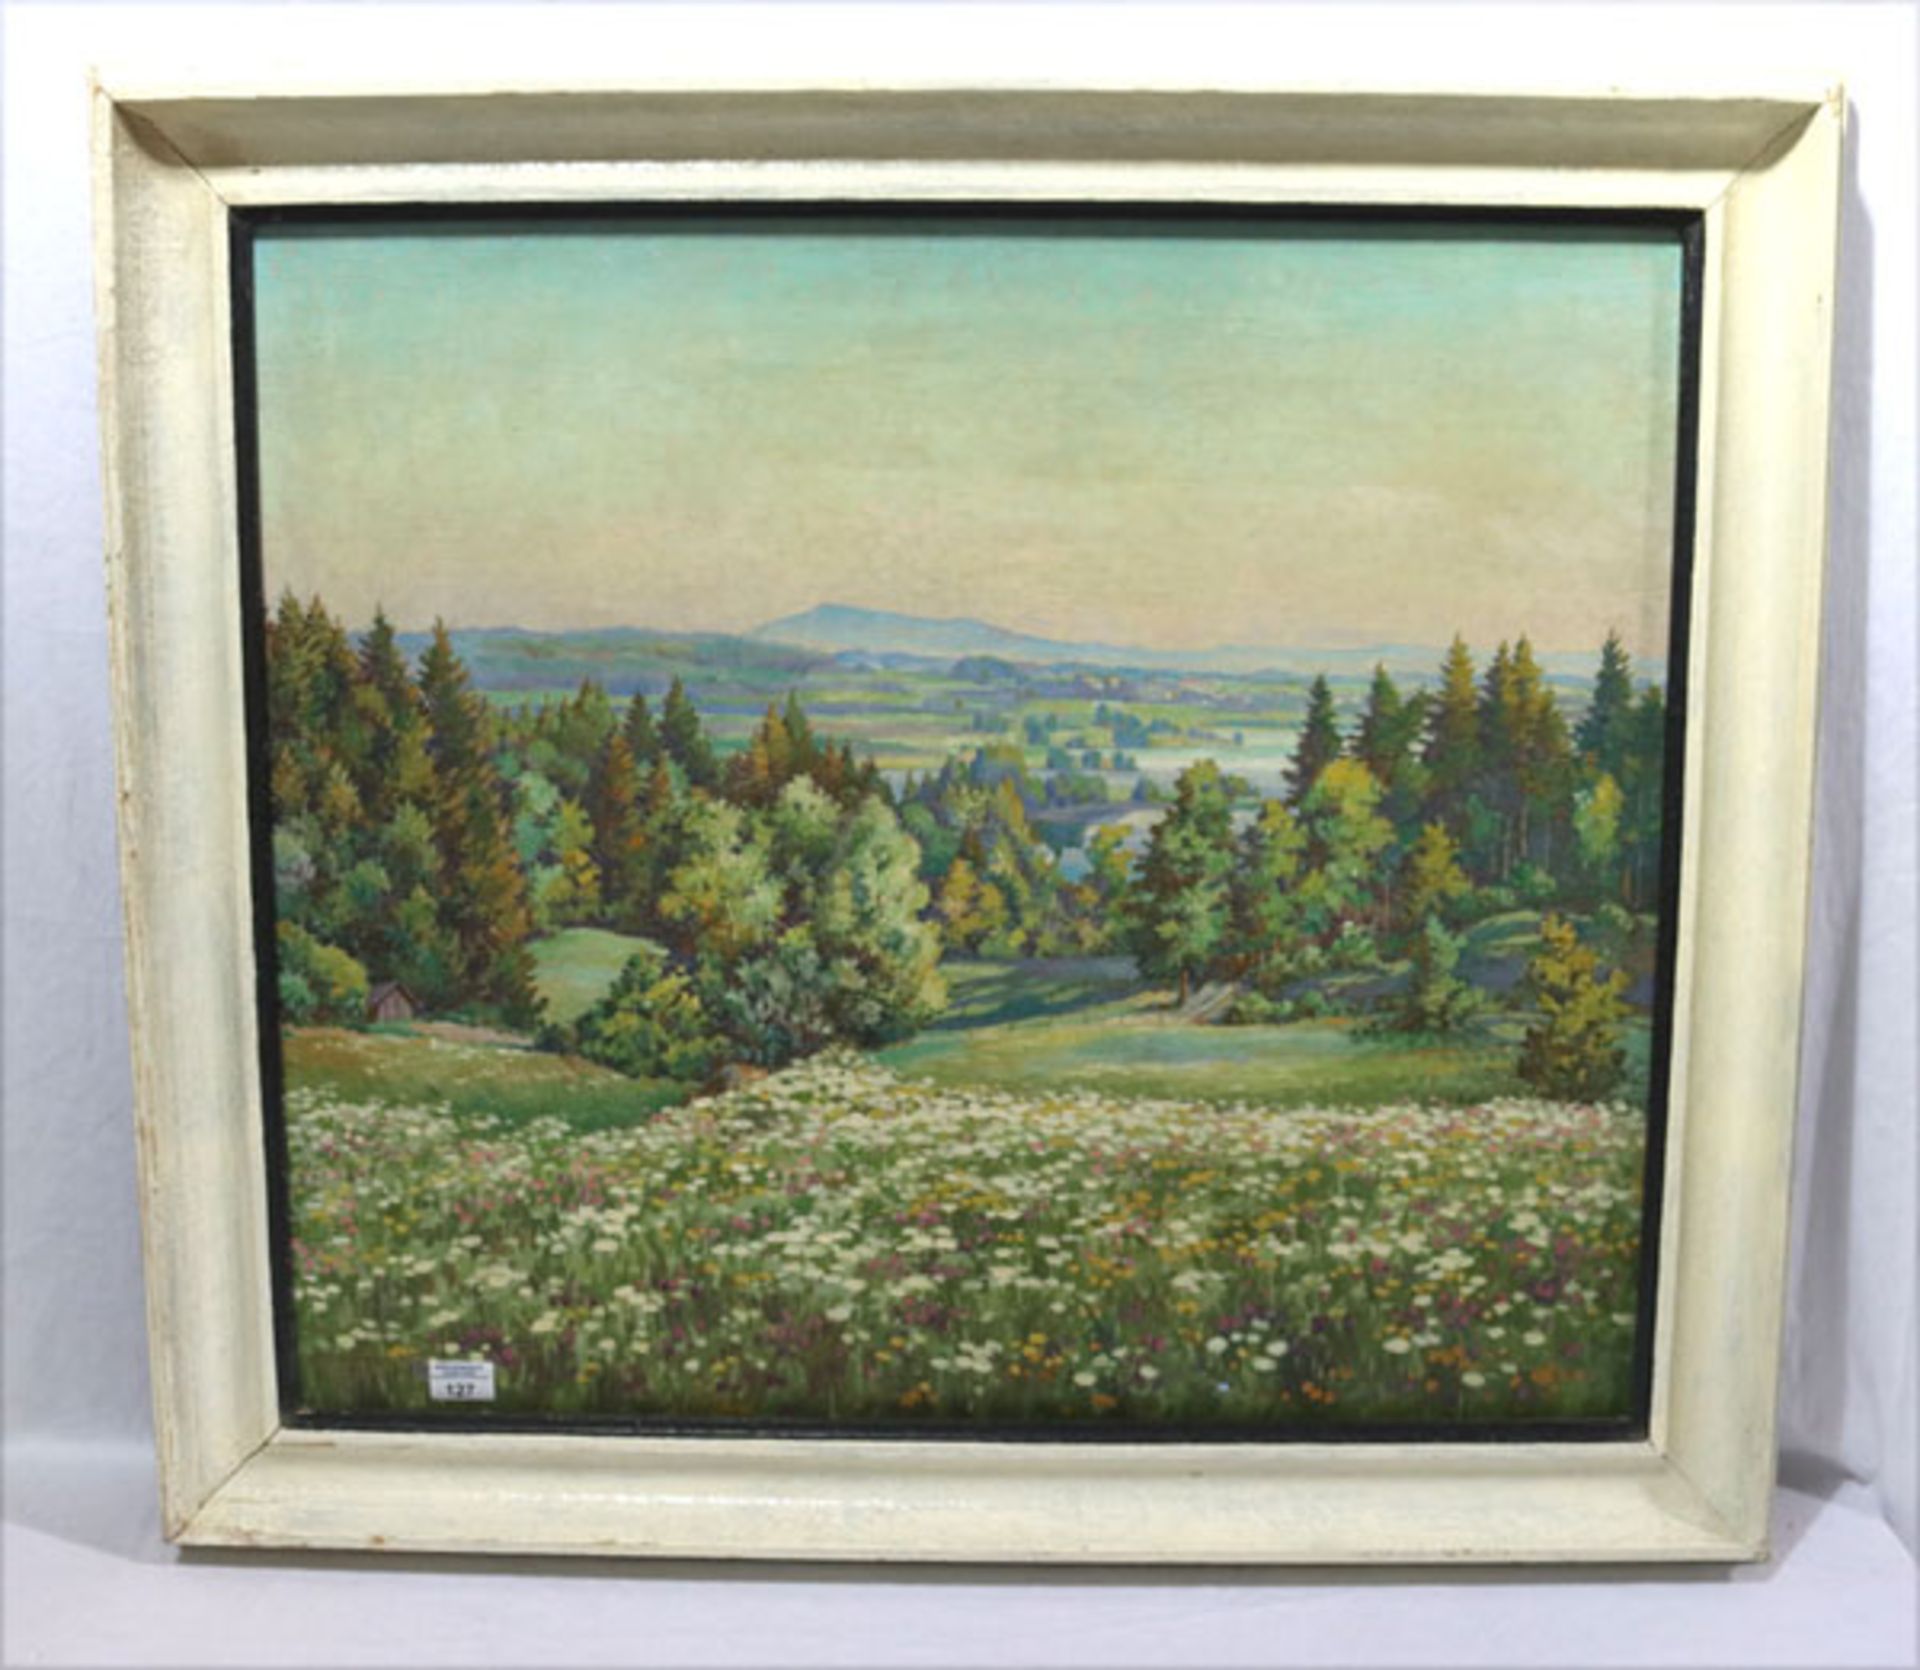 Gemälde ÖL/LW 'Voralpenlandschaft im Sommer', signiert Ed. Klinger, datiert 52 ?, Bildoberfläche hat